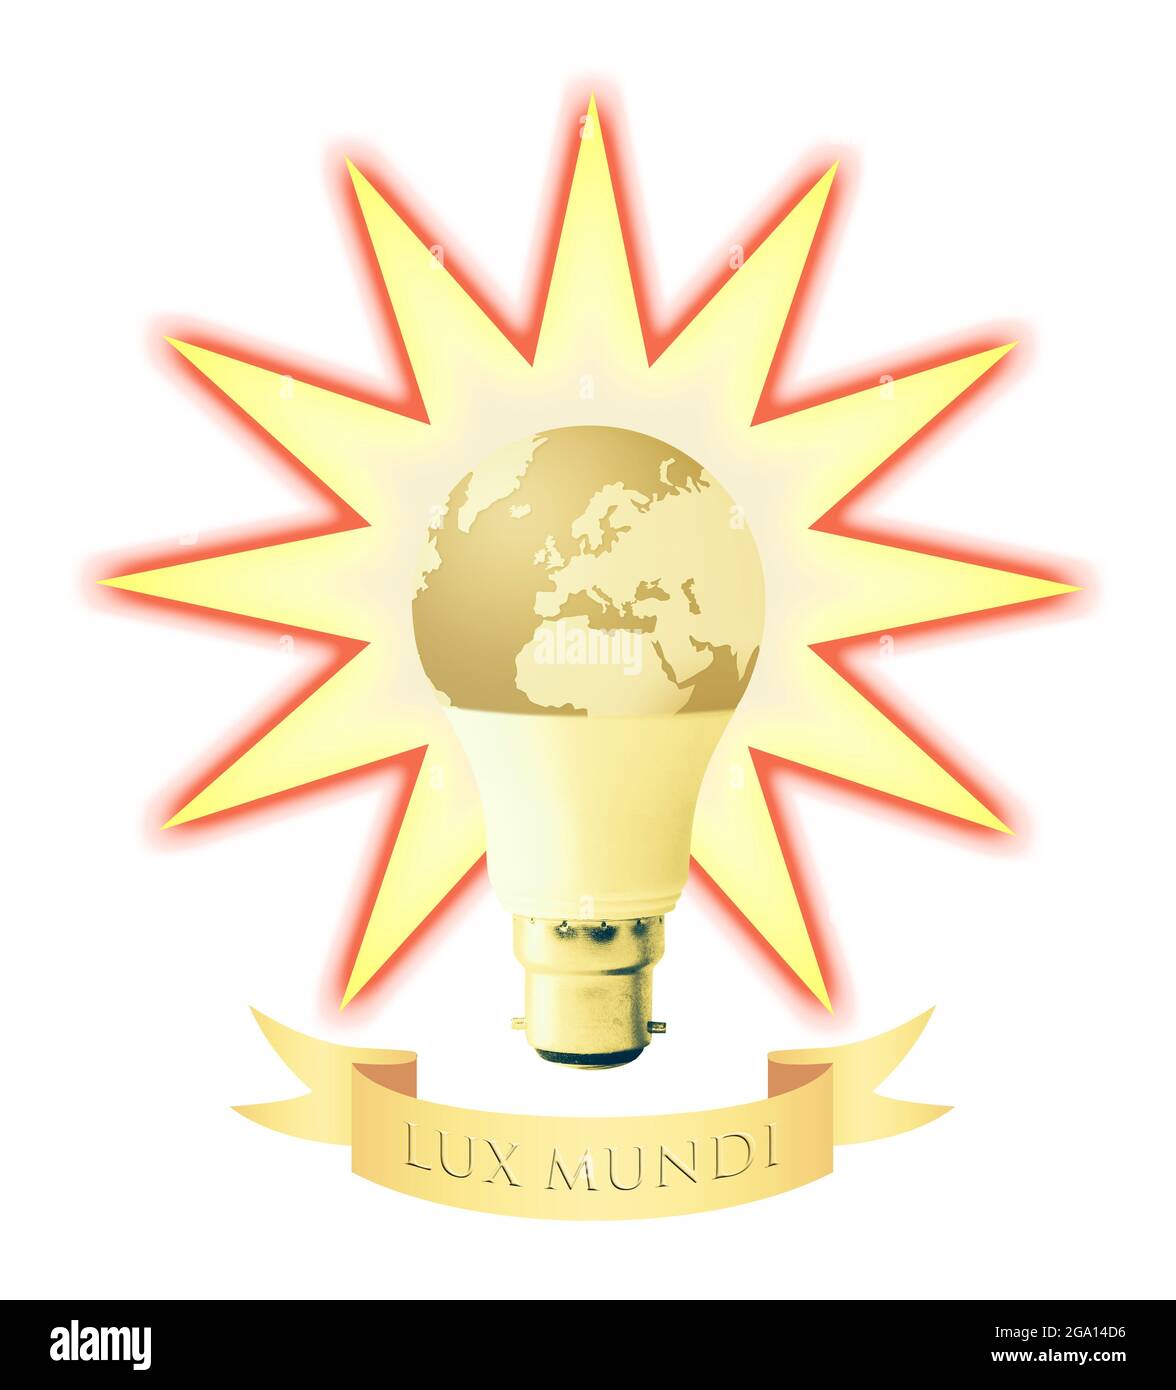 Konzeptbild der Erde als Glühbirne mit strahlender Umrandung und der lateinischen Inschrift 'Lux Mundi' (Licht der Welt) Stockfoto